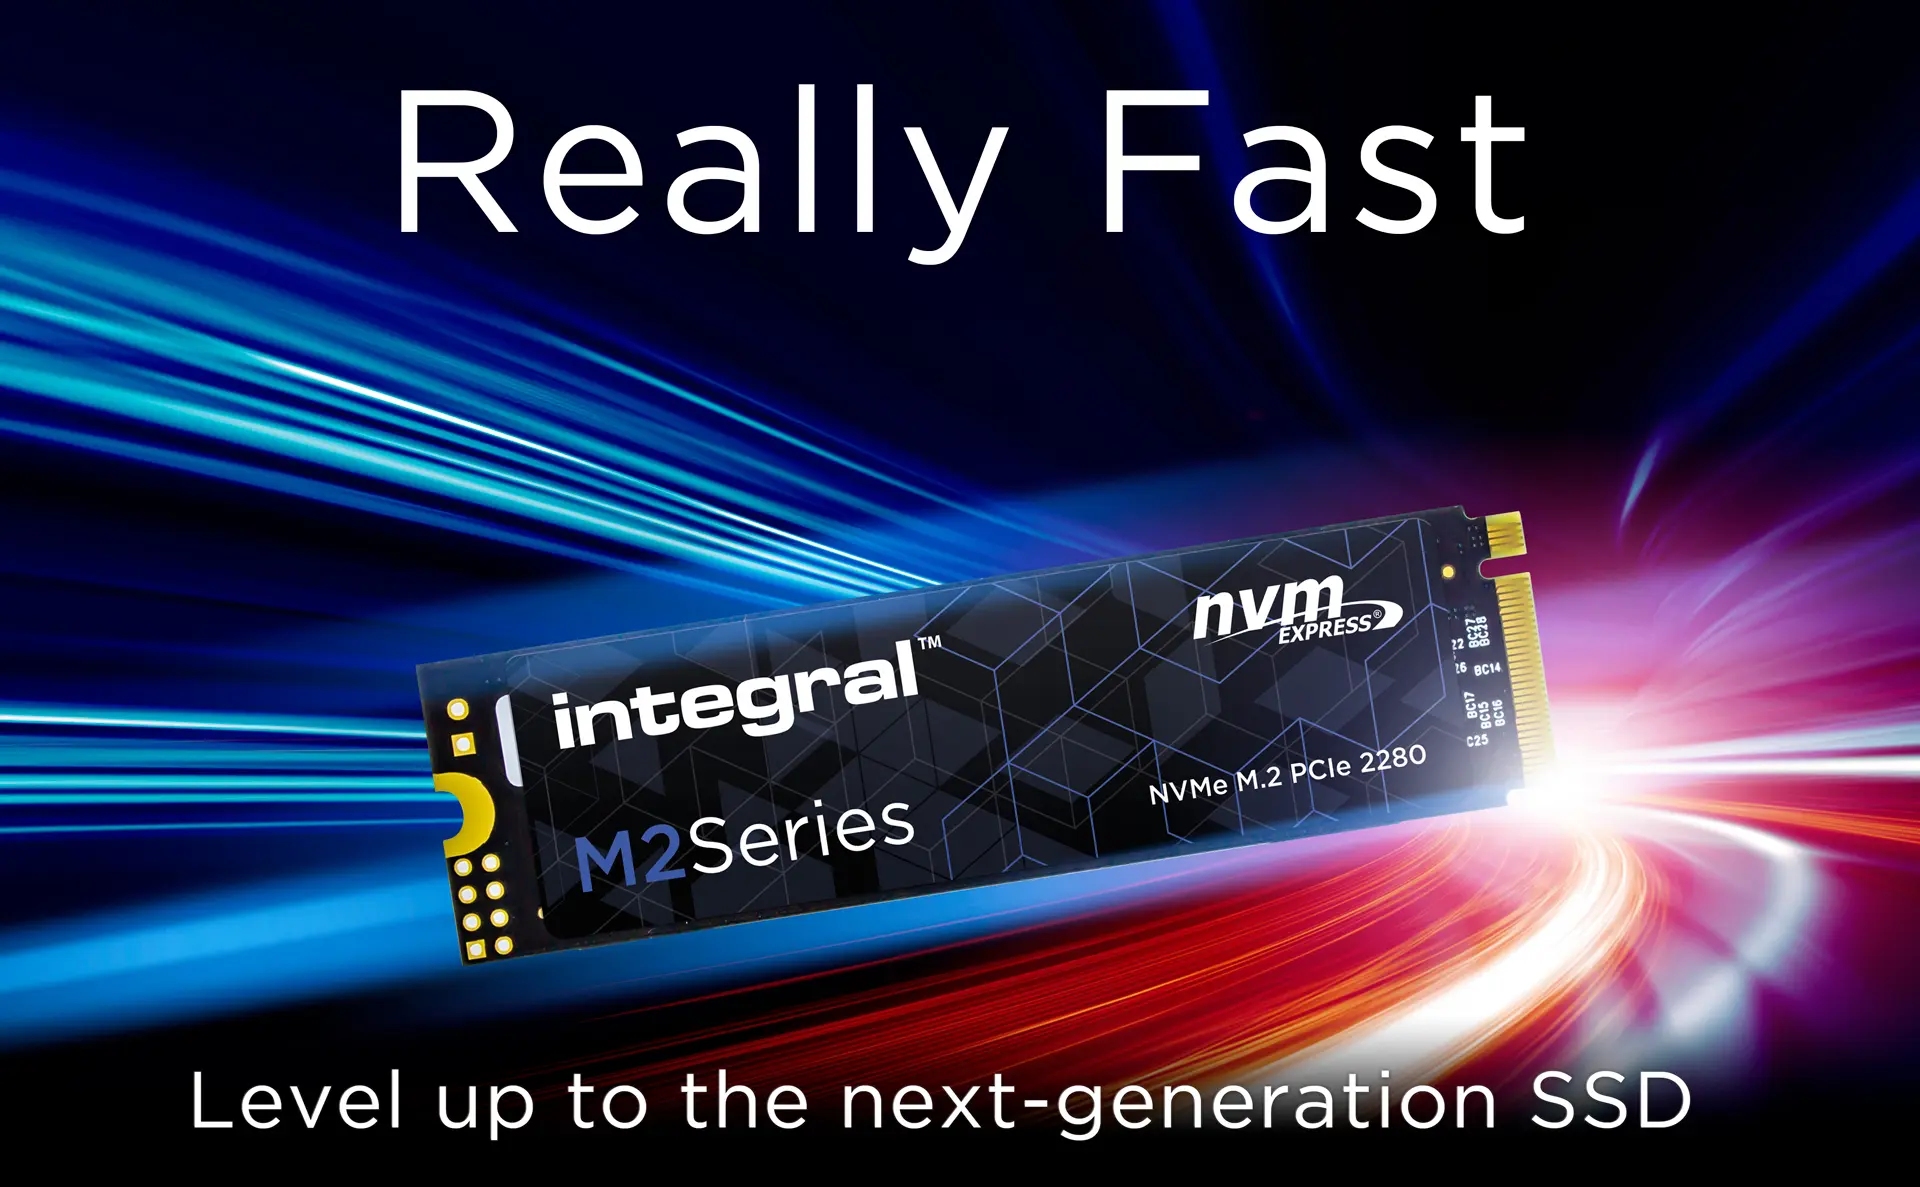 Next Gen Speed M2 SERIES M.2 2280 PCIE NVME SSD